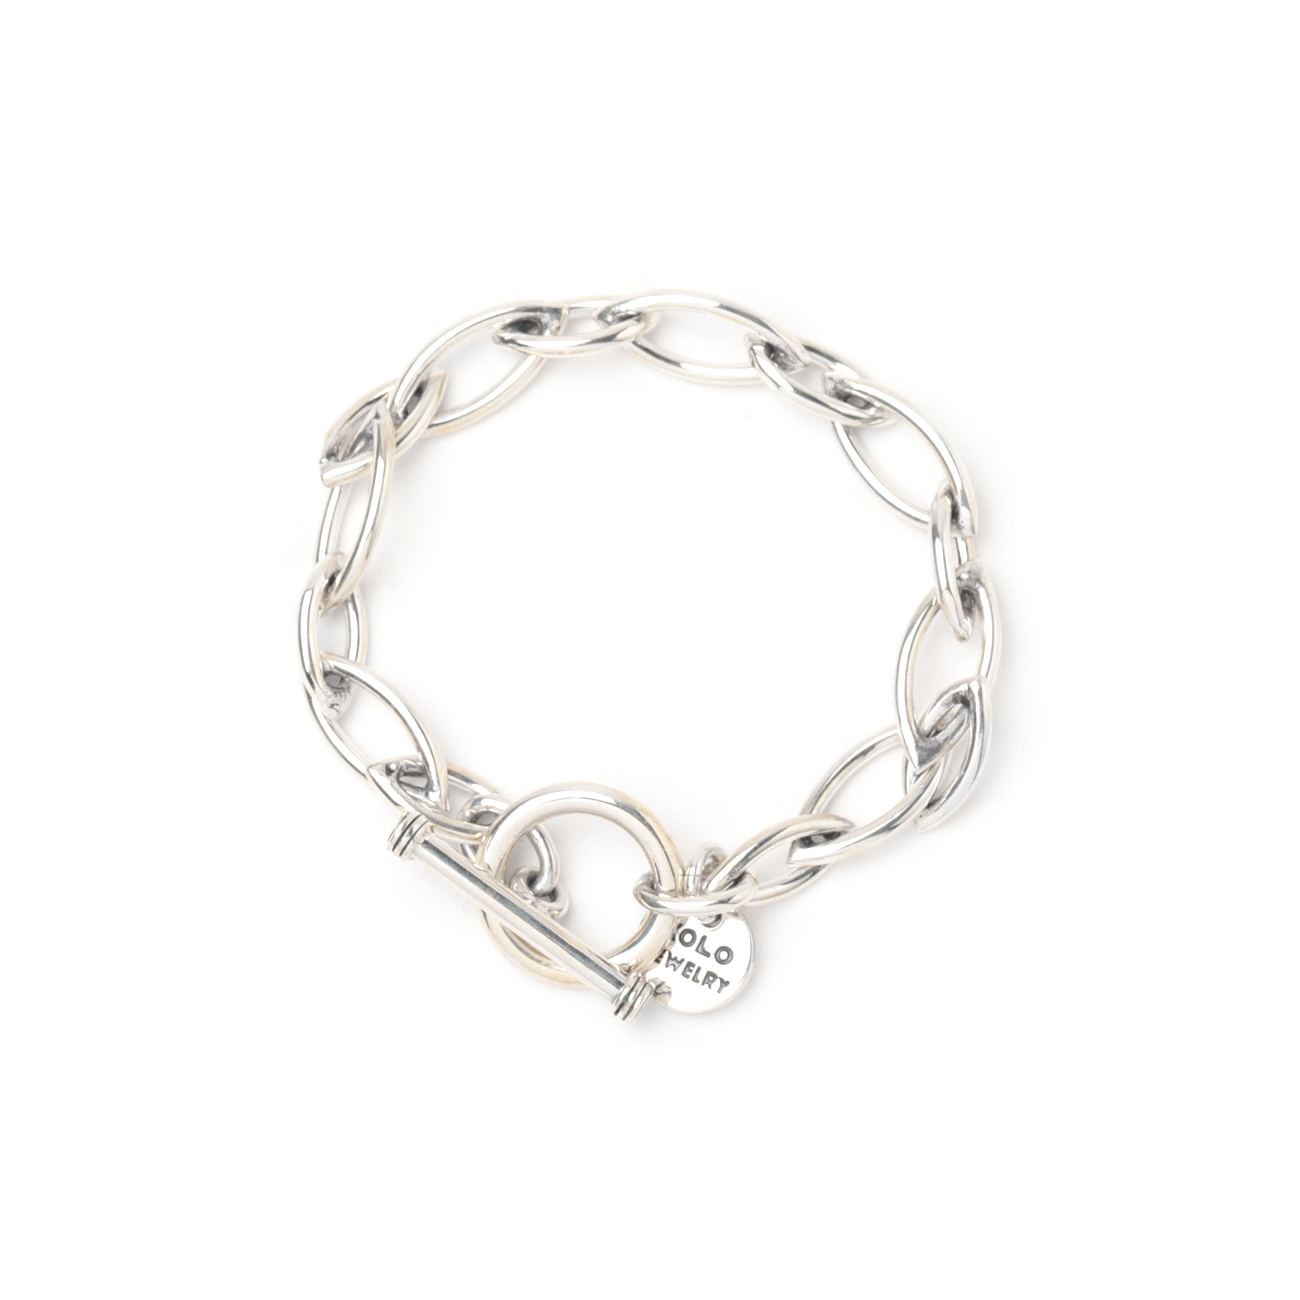 Sharp link bracelet - 7mm - Silver 925